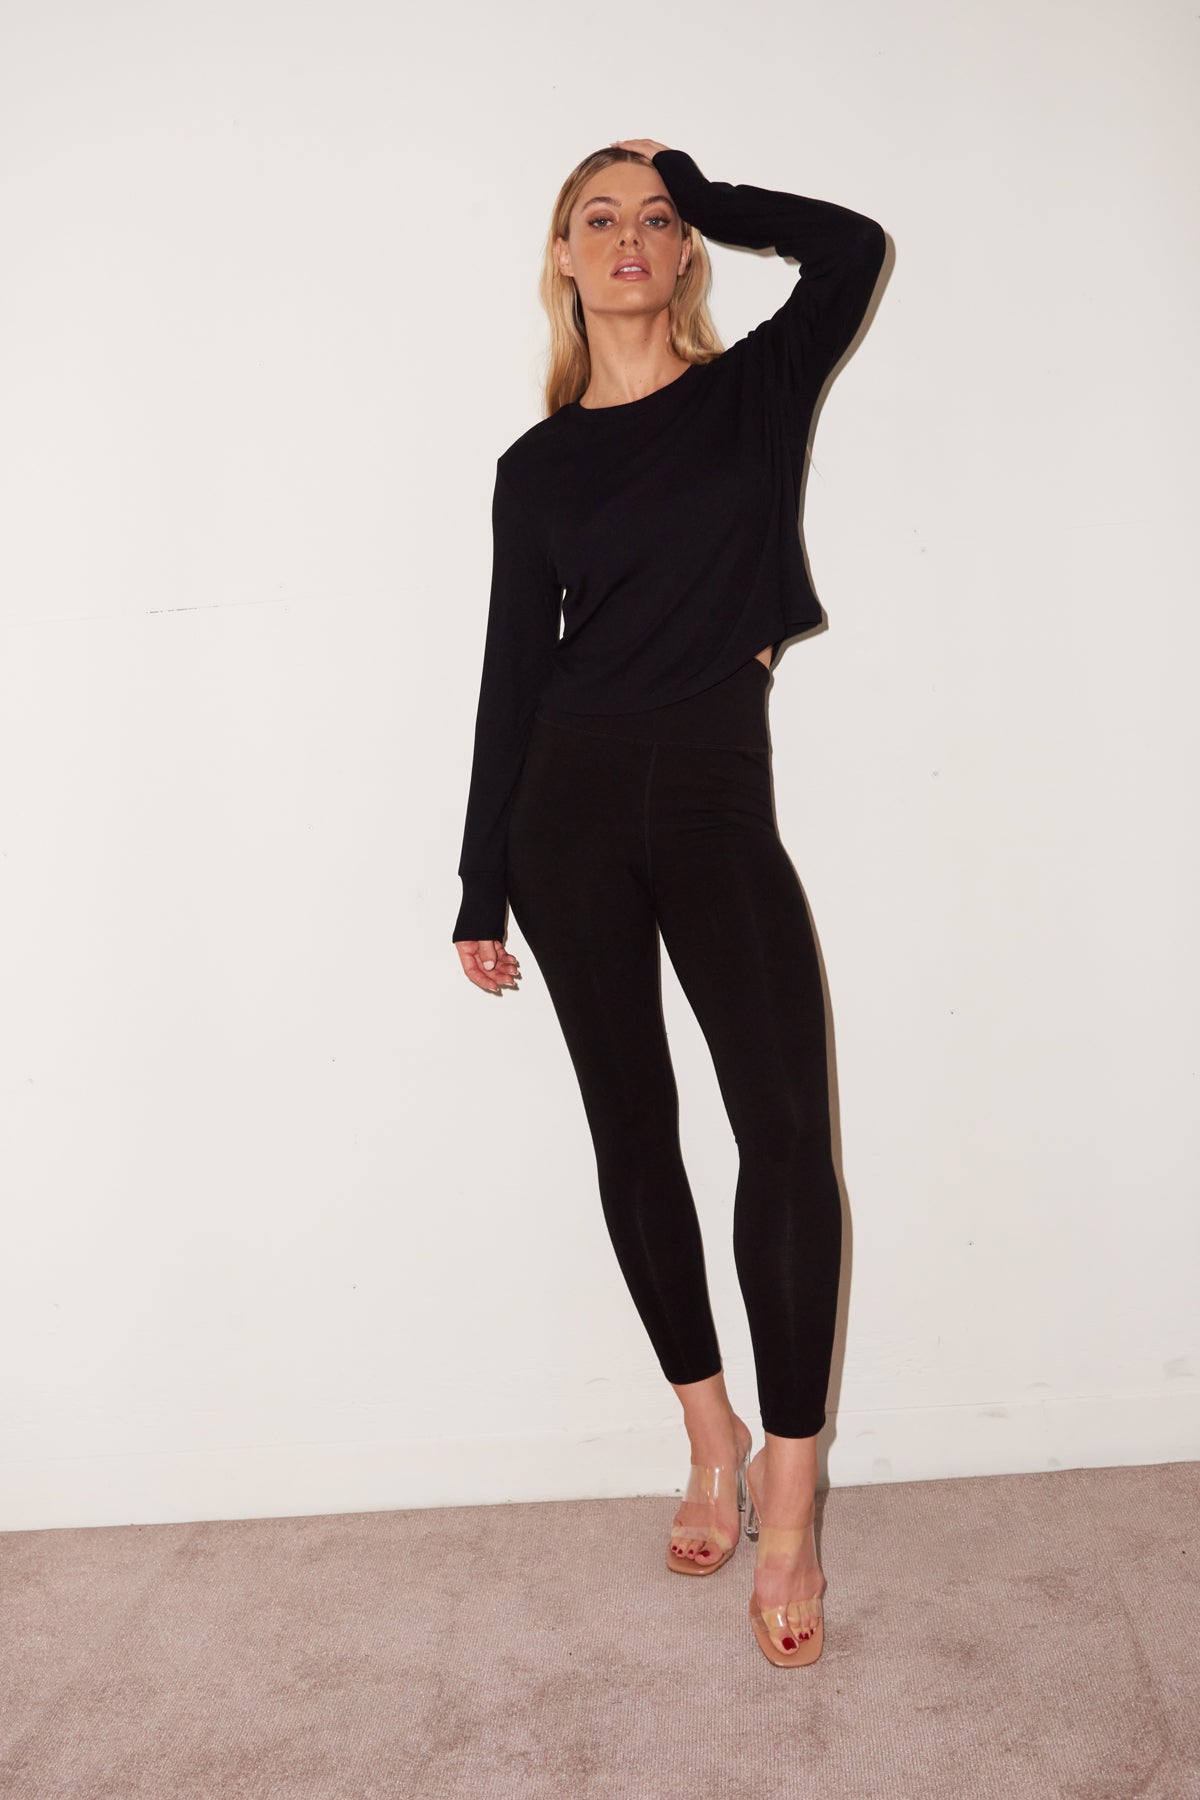 TU Womens Black Viscose Capri Leggings Size 14 L26 in – Preworn Ltd